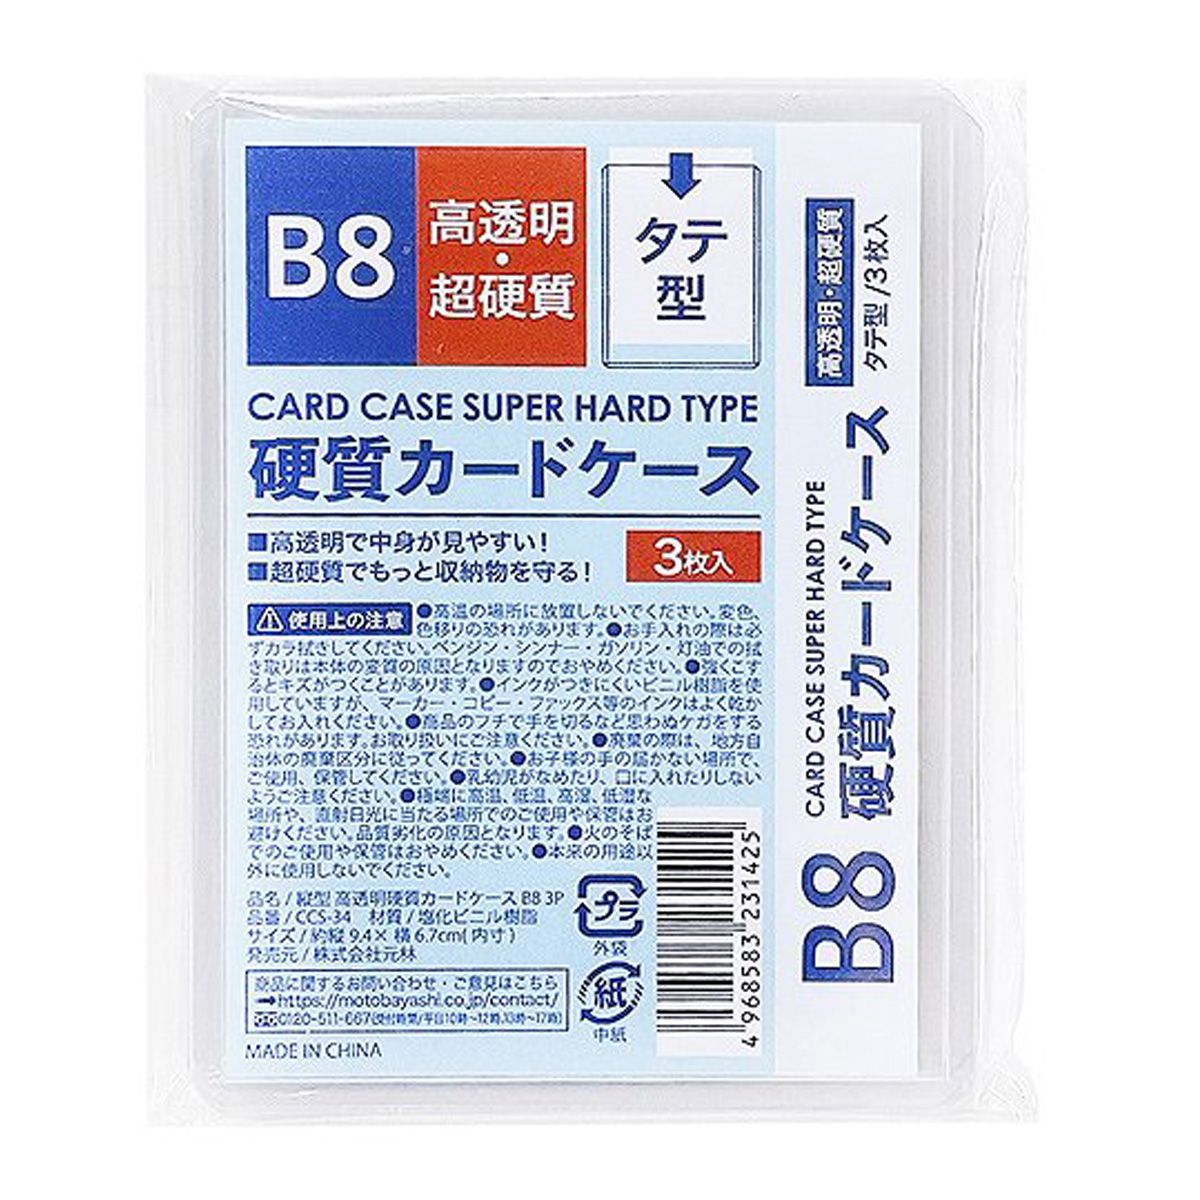 硬質カードケース 縦型超硬質ケース B8 3P 352132